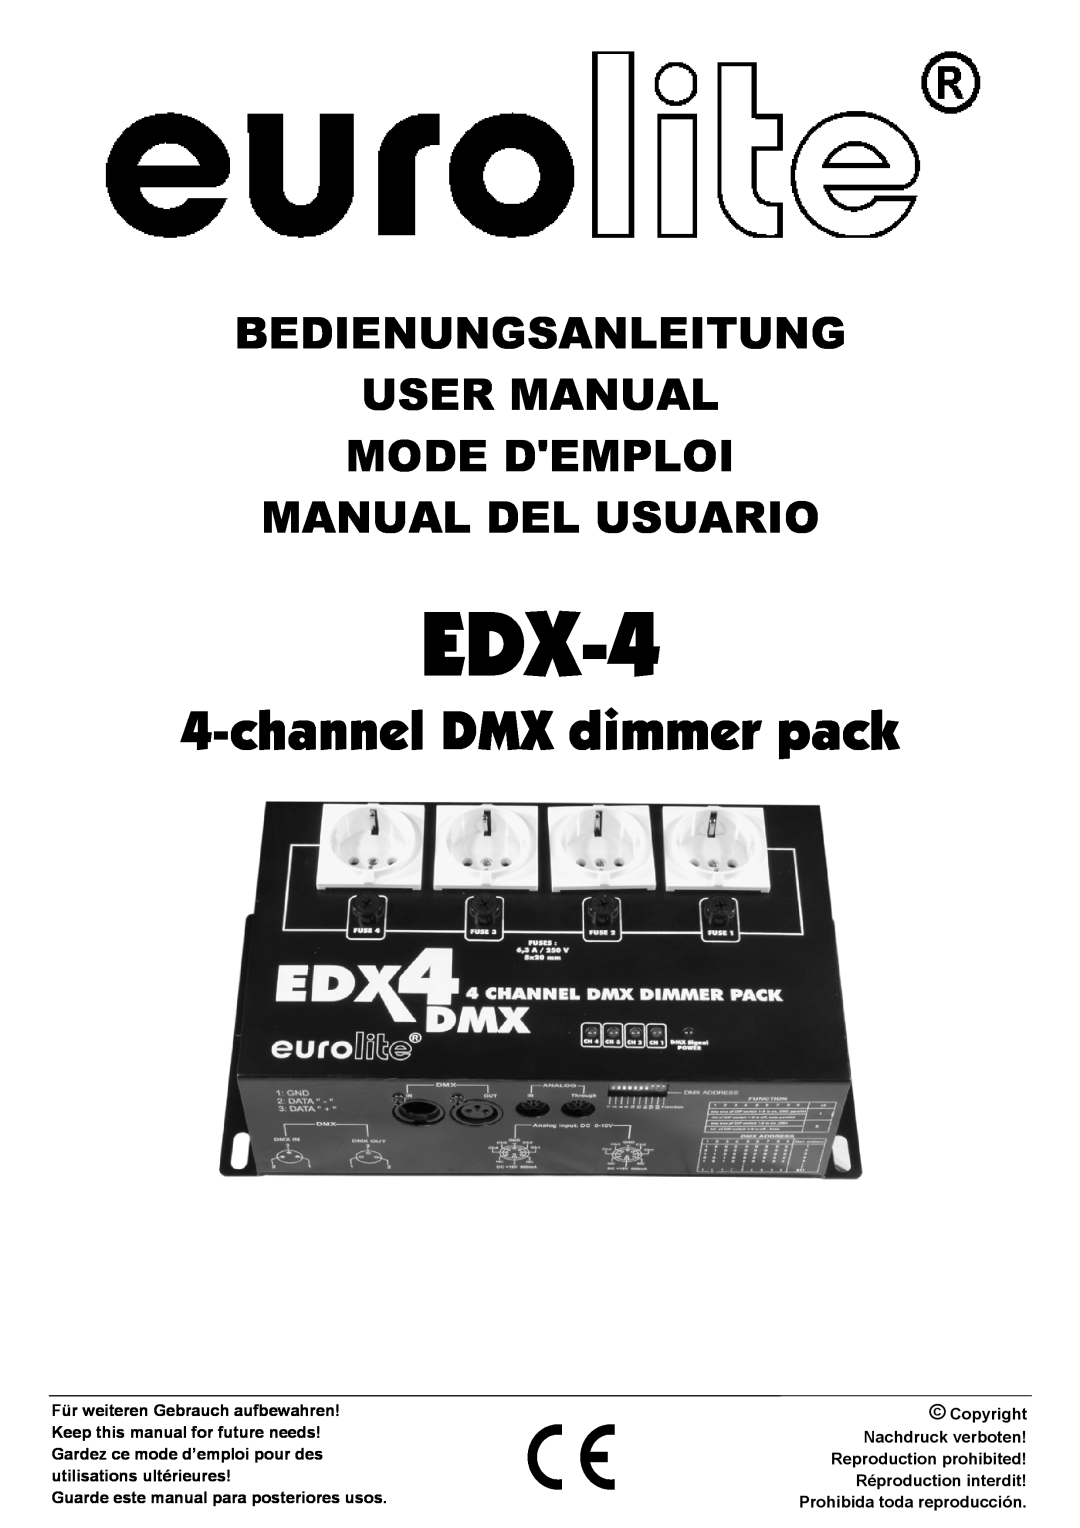 EuroLite Cases 4-channel DMX dimmer pack user manual EDX-4 